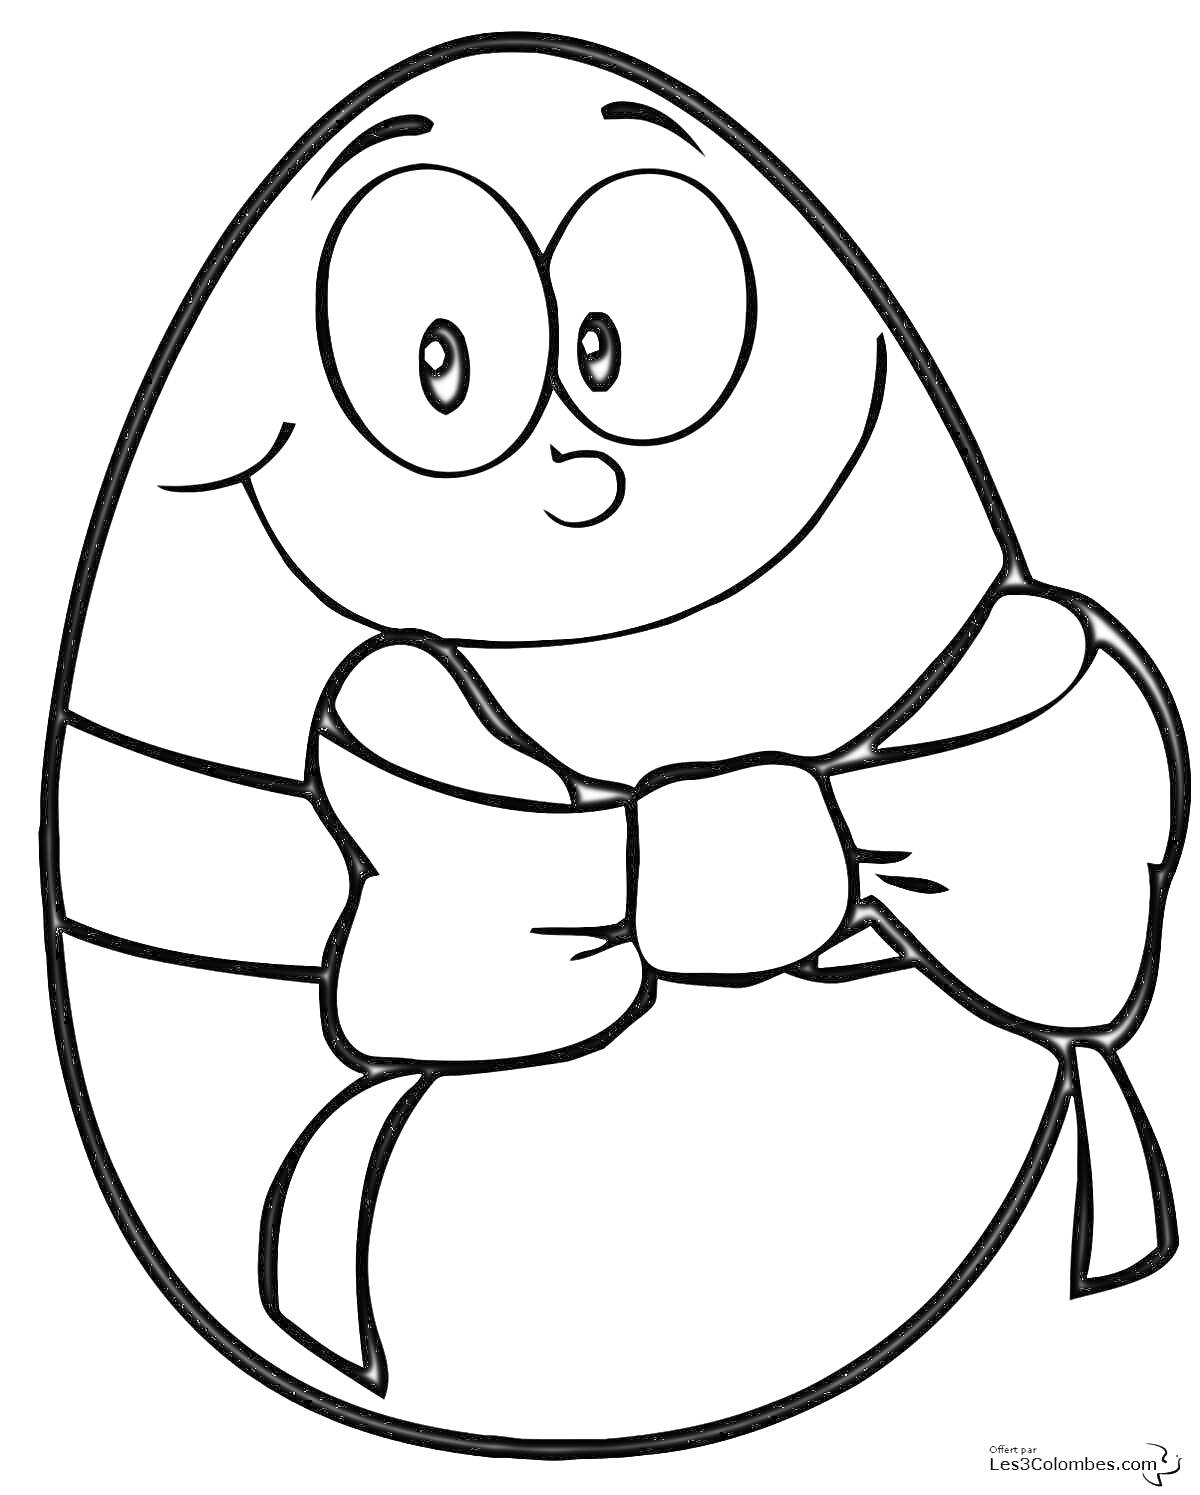 Раскраска Киндер яйцо с бантом